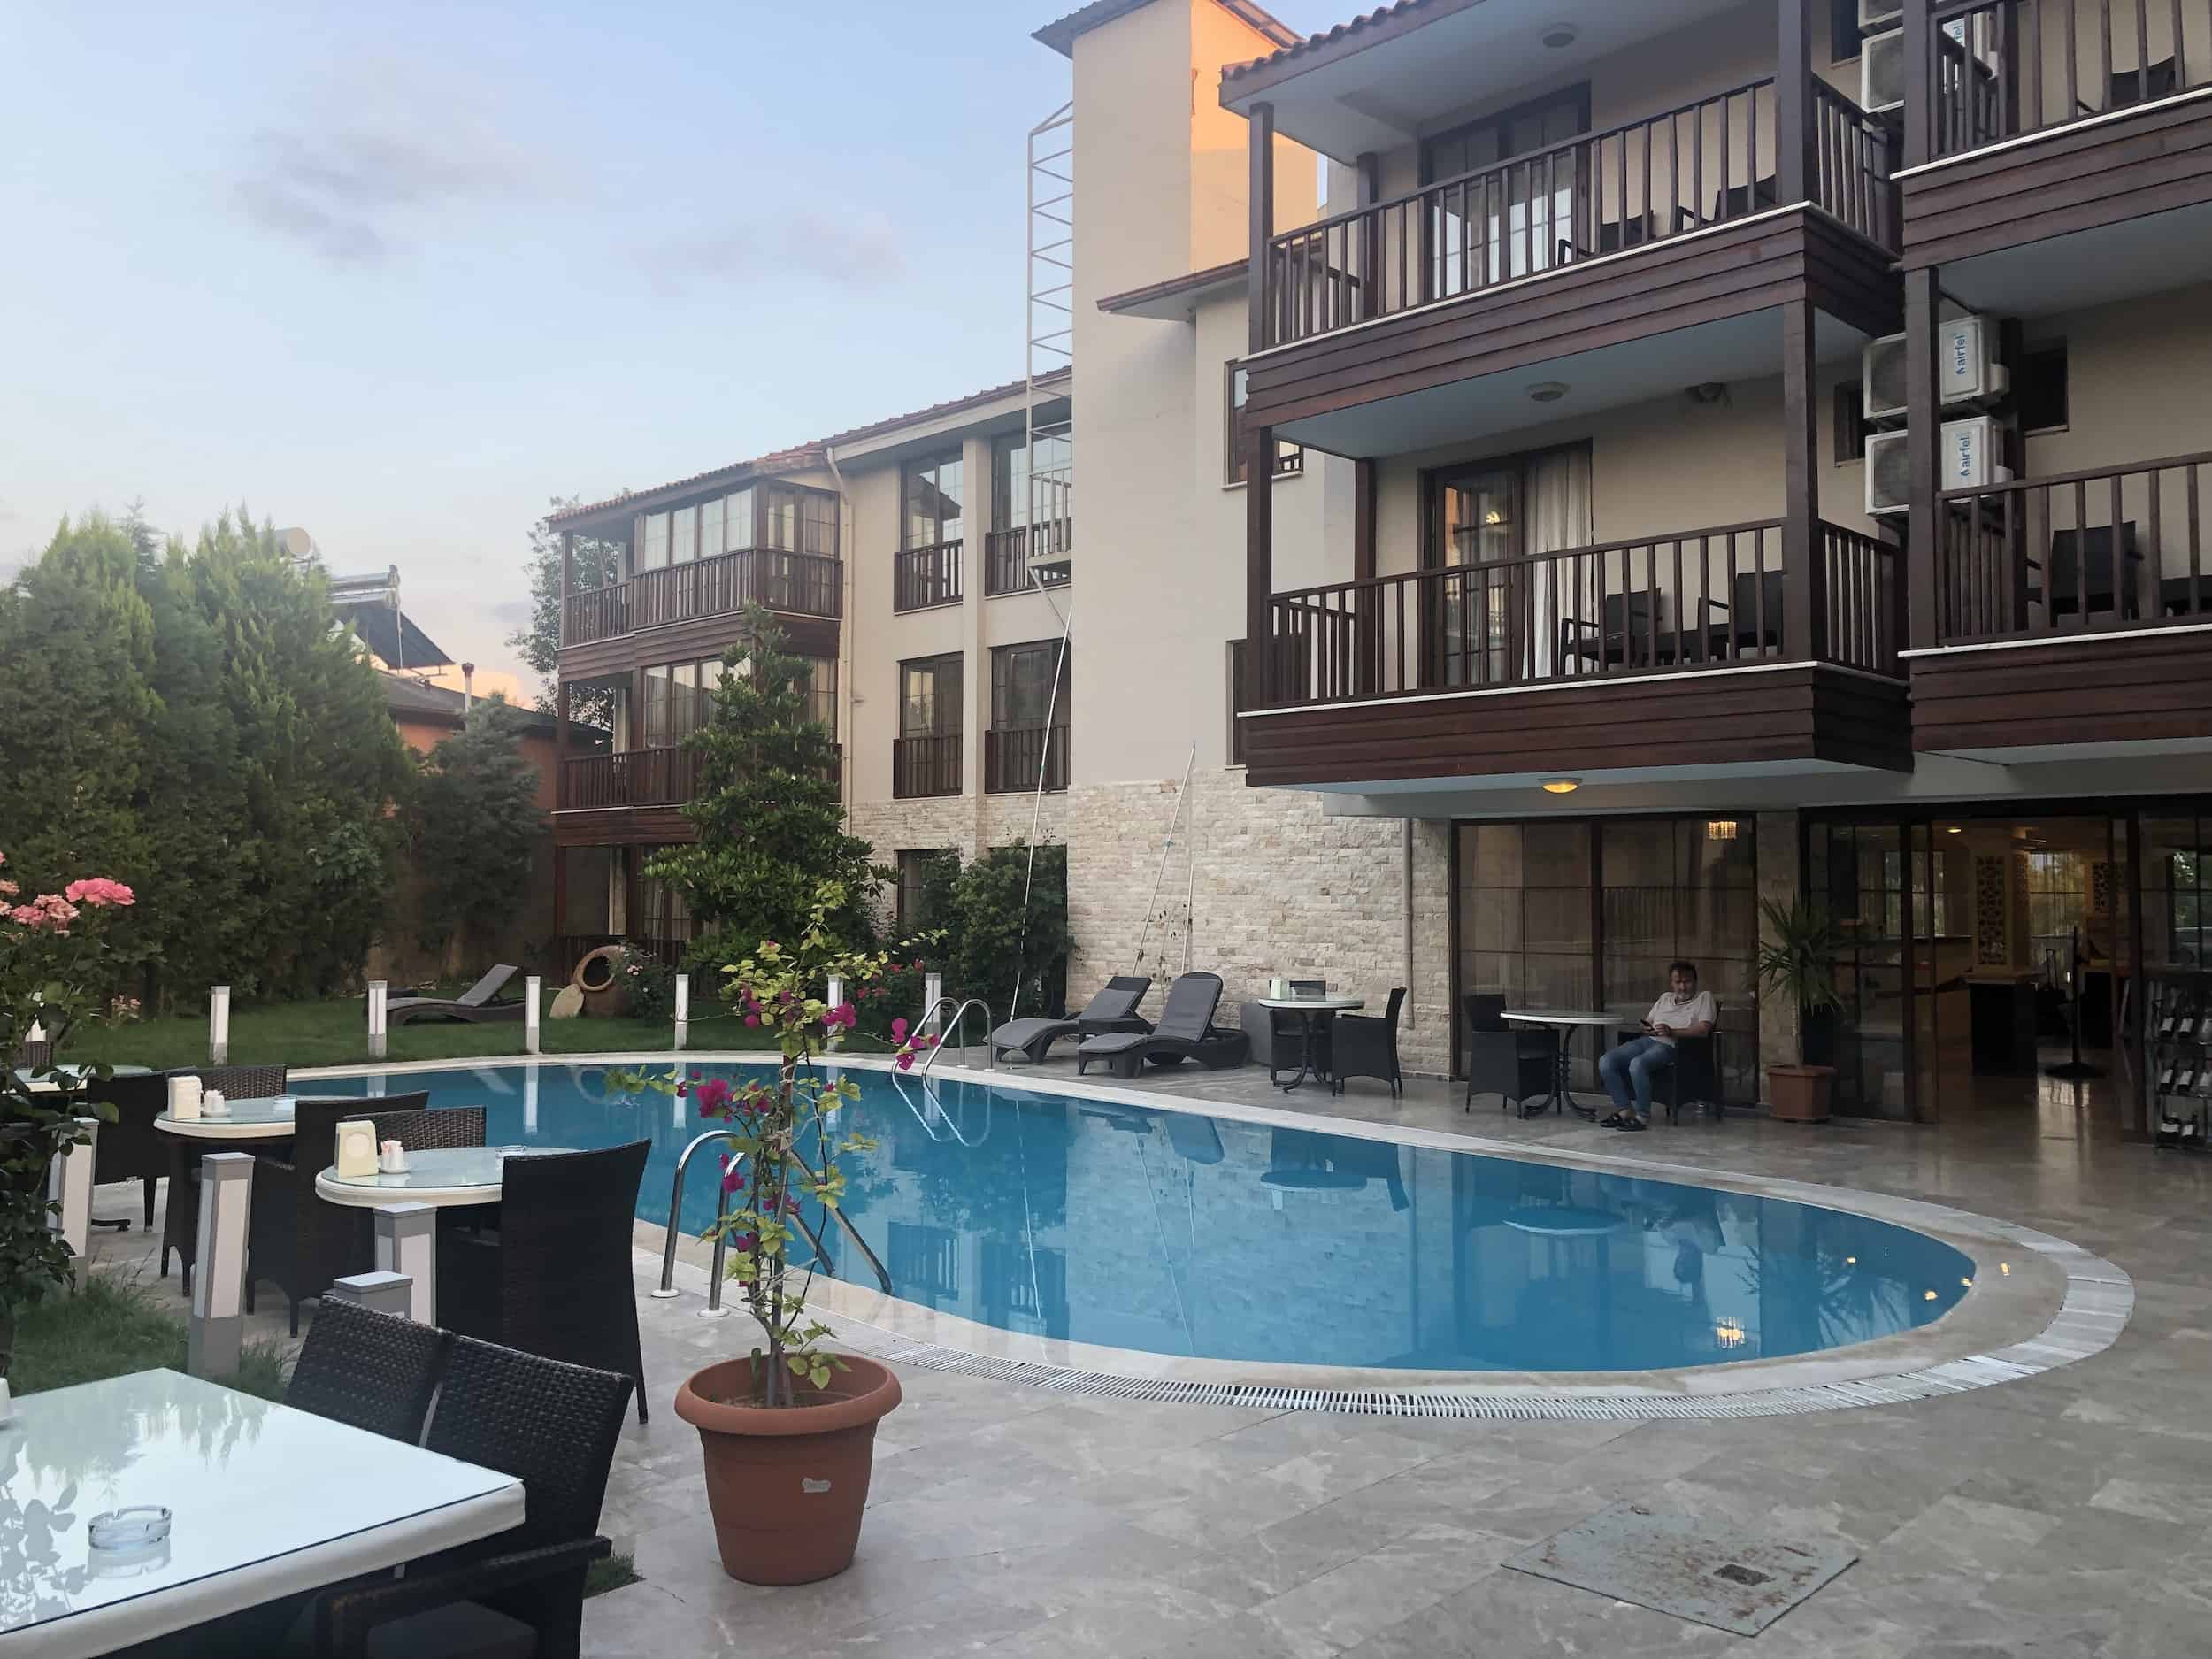 Pool at Venus Suite Hotel in Pamukkale, Turkey